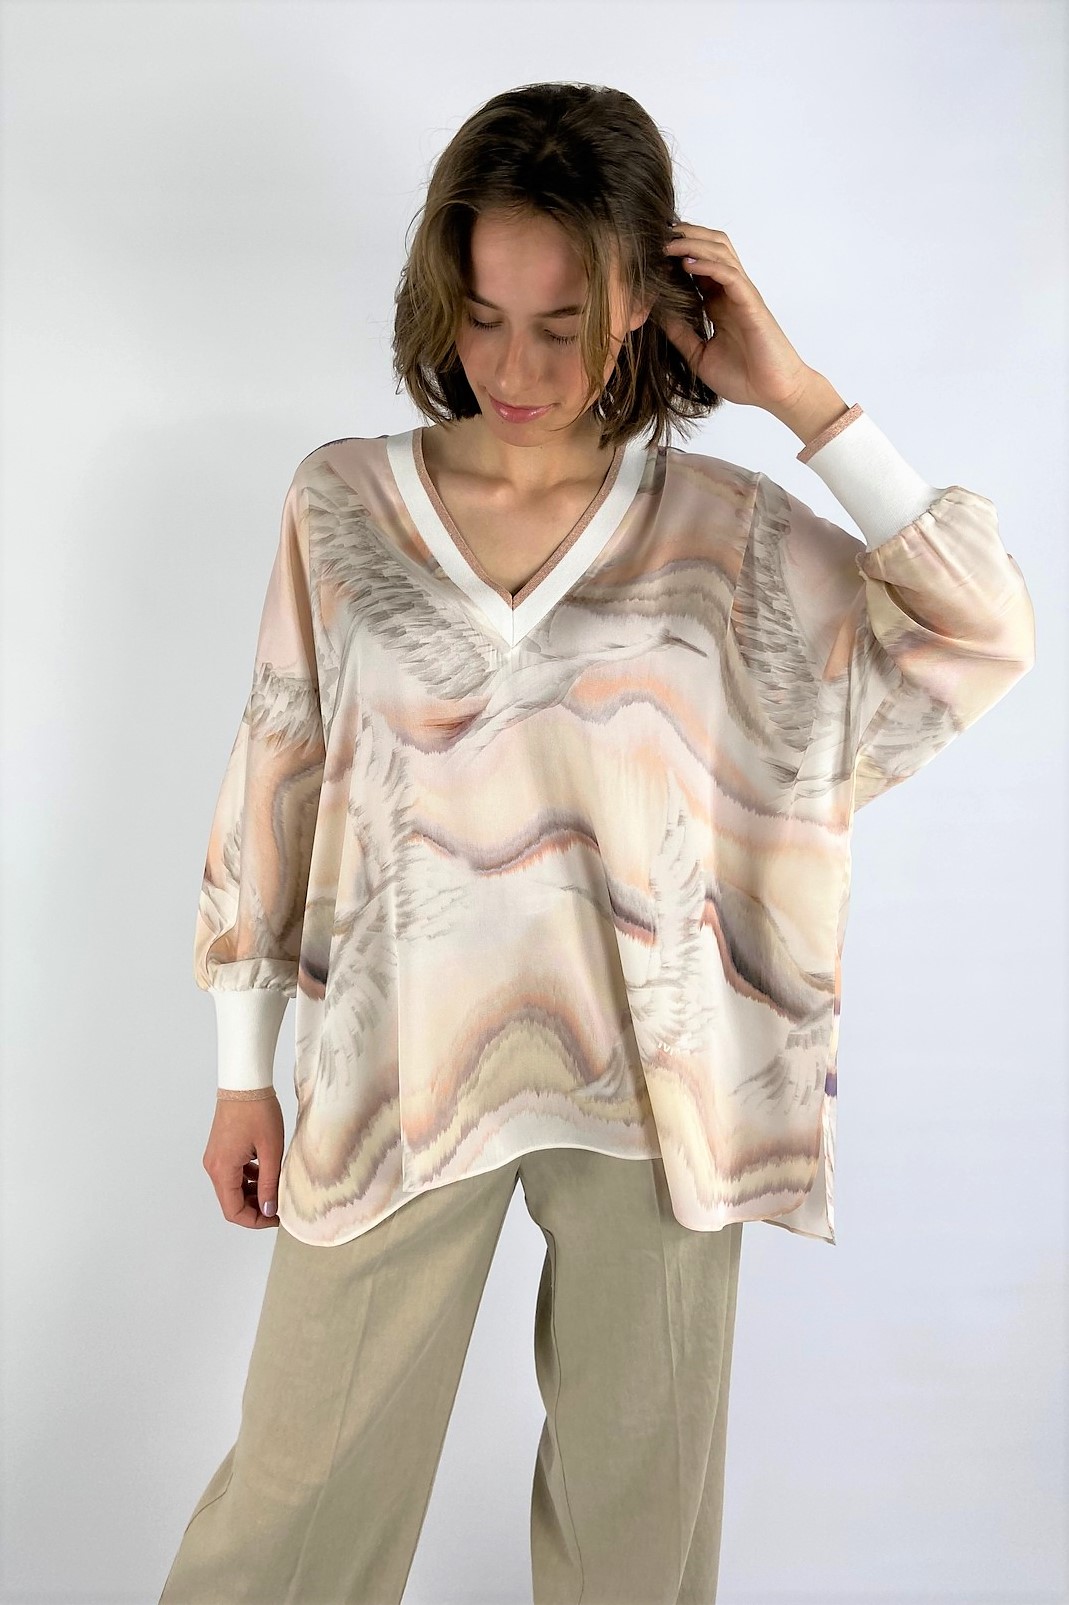 Shirtbloes V print tricot in de kleur cream zalm van het merk Ivi